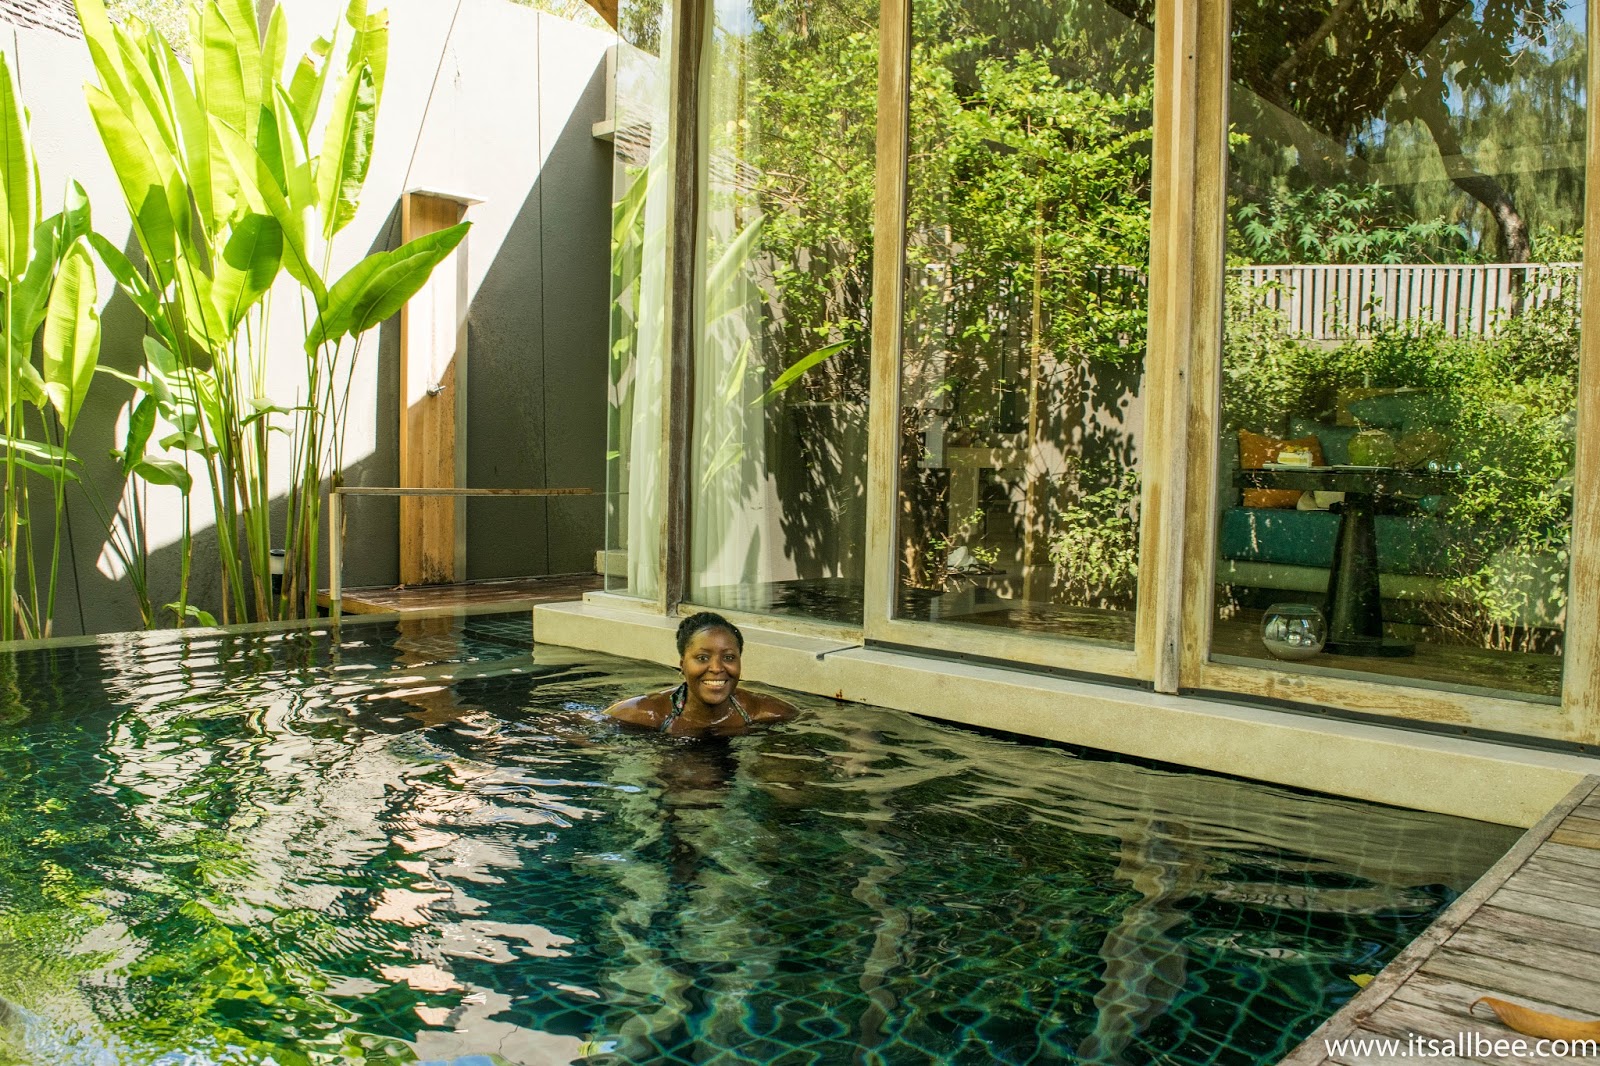 Luxury Private Pool Villa Phuket | Phuket Villa Rental | Our Phuket Villa At Renaissance + Luxury Hotels In Phuket